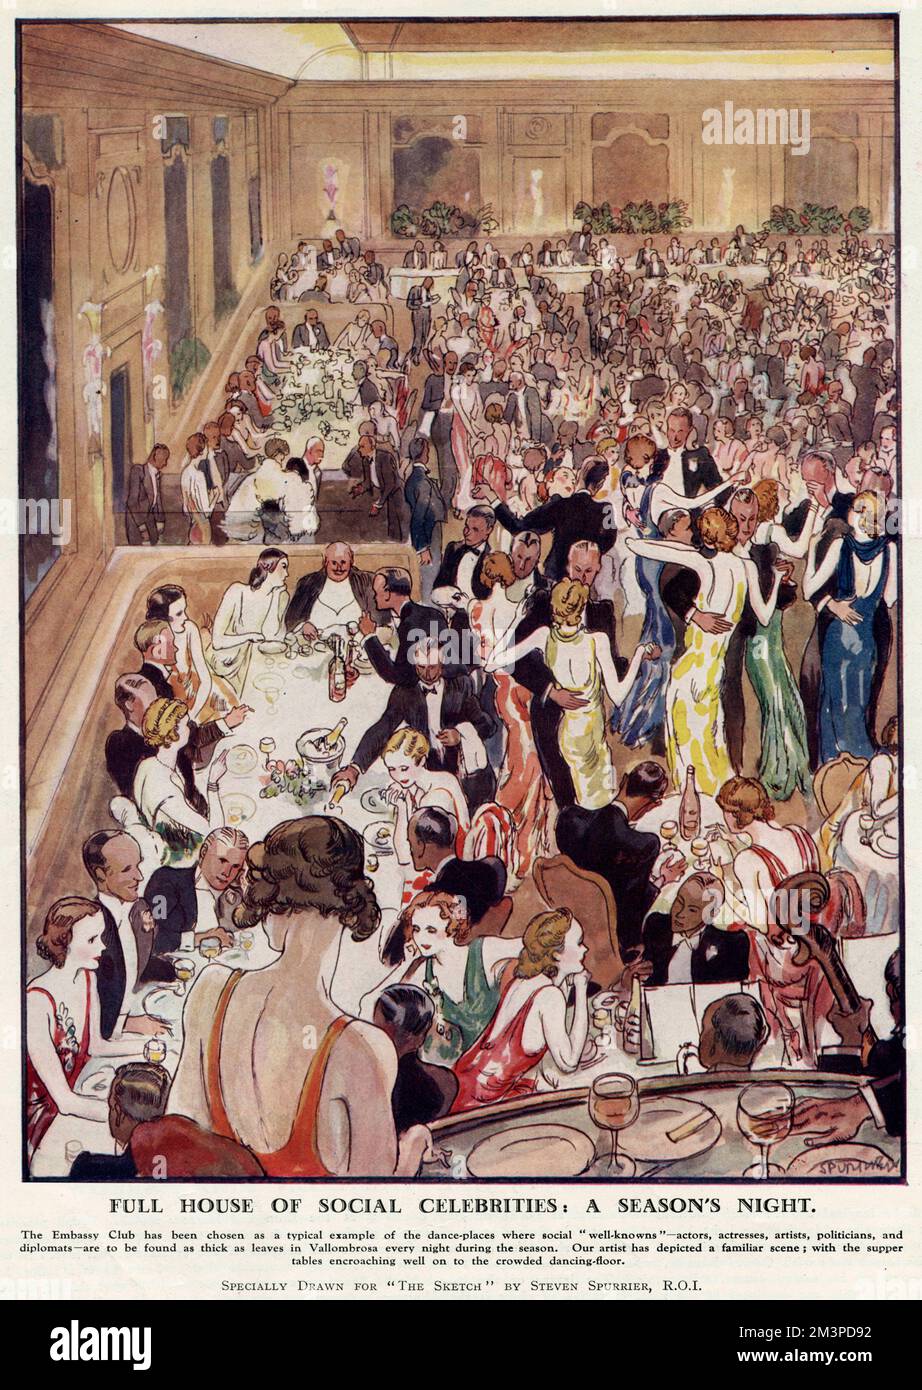 Ein ganzes Haus voller gesellschaftlicher Promis; ein Saisonabend. Szene im Embassy Club in der Bond Street, London, einem der angesagtesten und exklusivsten Nachtclubs in der Hauptstadt, wo der Prinz von Wales zu Gast war. Auf der Tanzfläche, die von Paaren übersät wird, können Sie die Esstische beobachten. Datum: 1932 Stockfoto